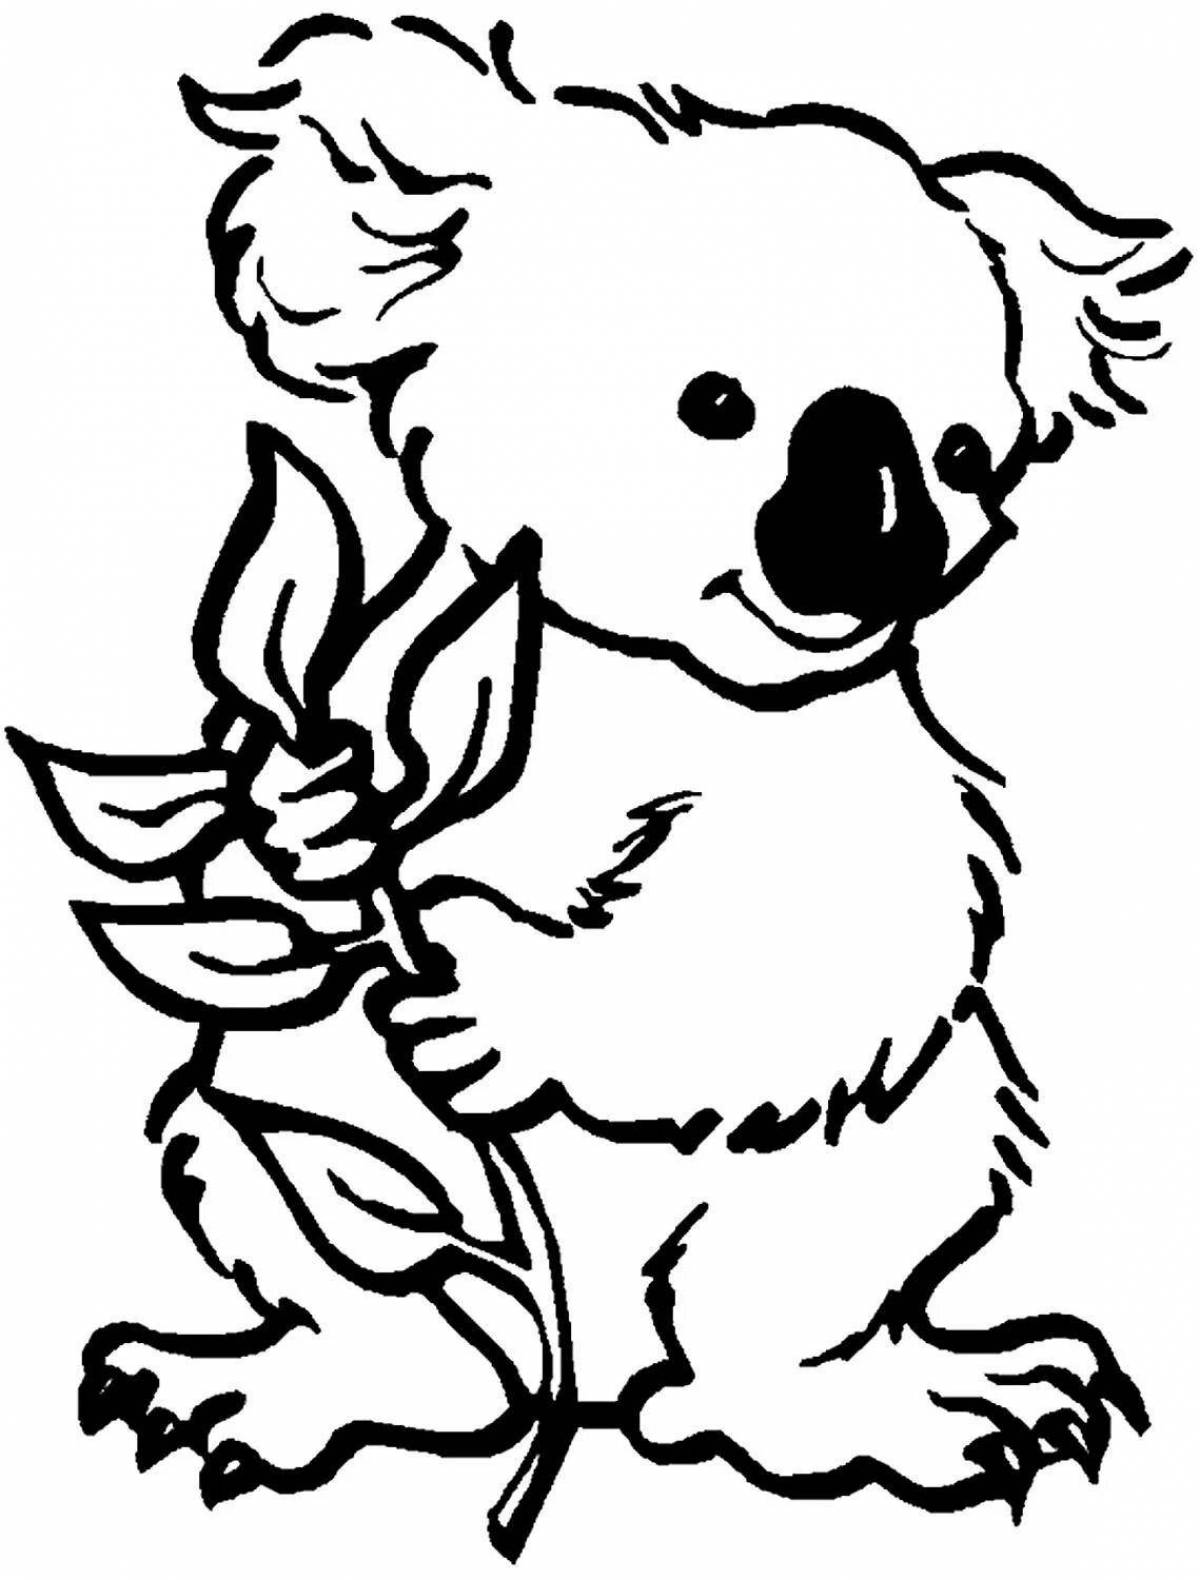 Юмористическая раскраска коала для детей